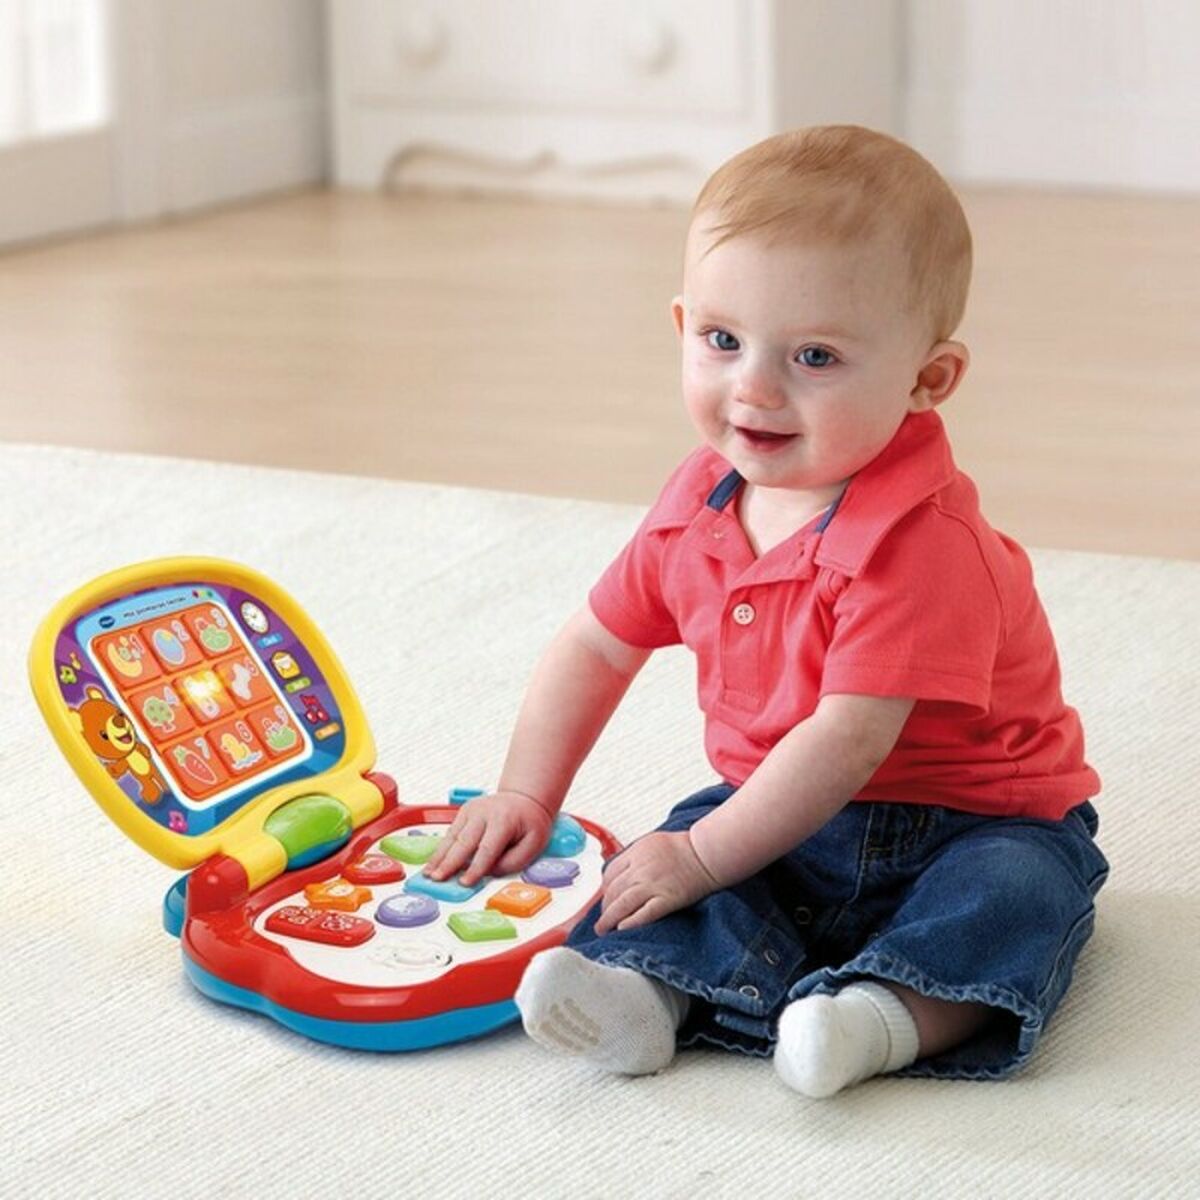 Interaktiv leksak för småbarn Vtech Baby (ES)-Bebis, Leksaker för småbarn-Vtech-peaceofhome.se